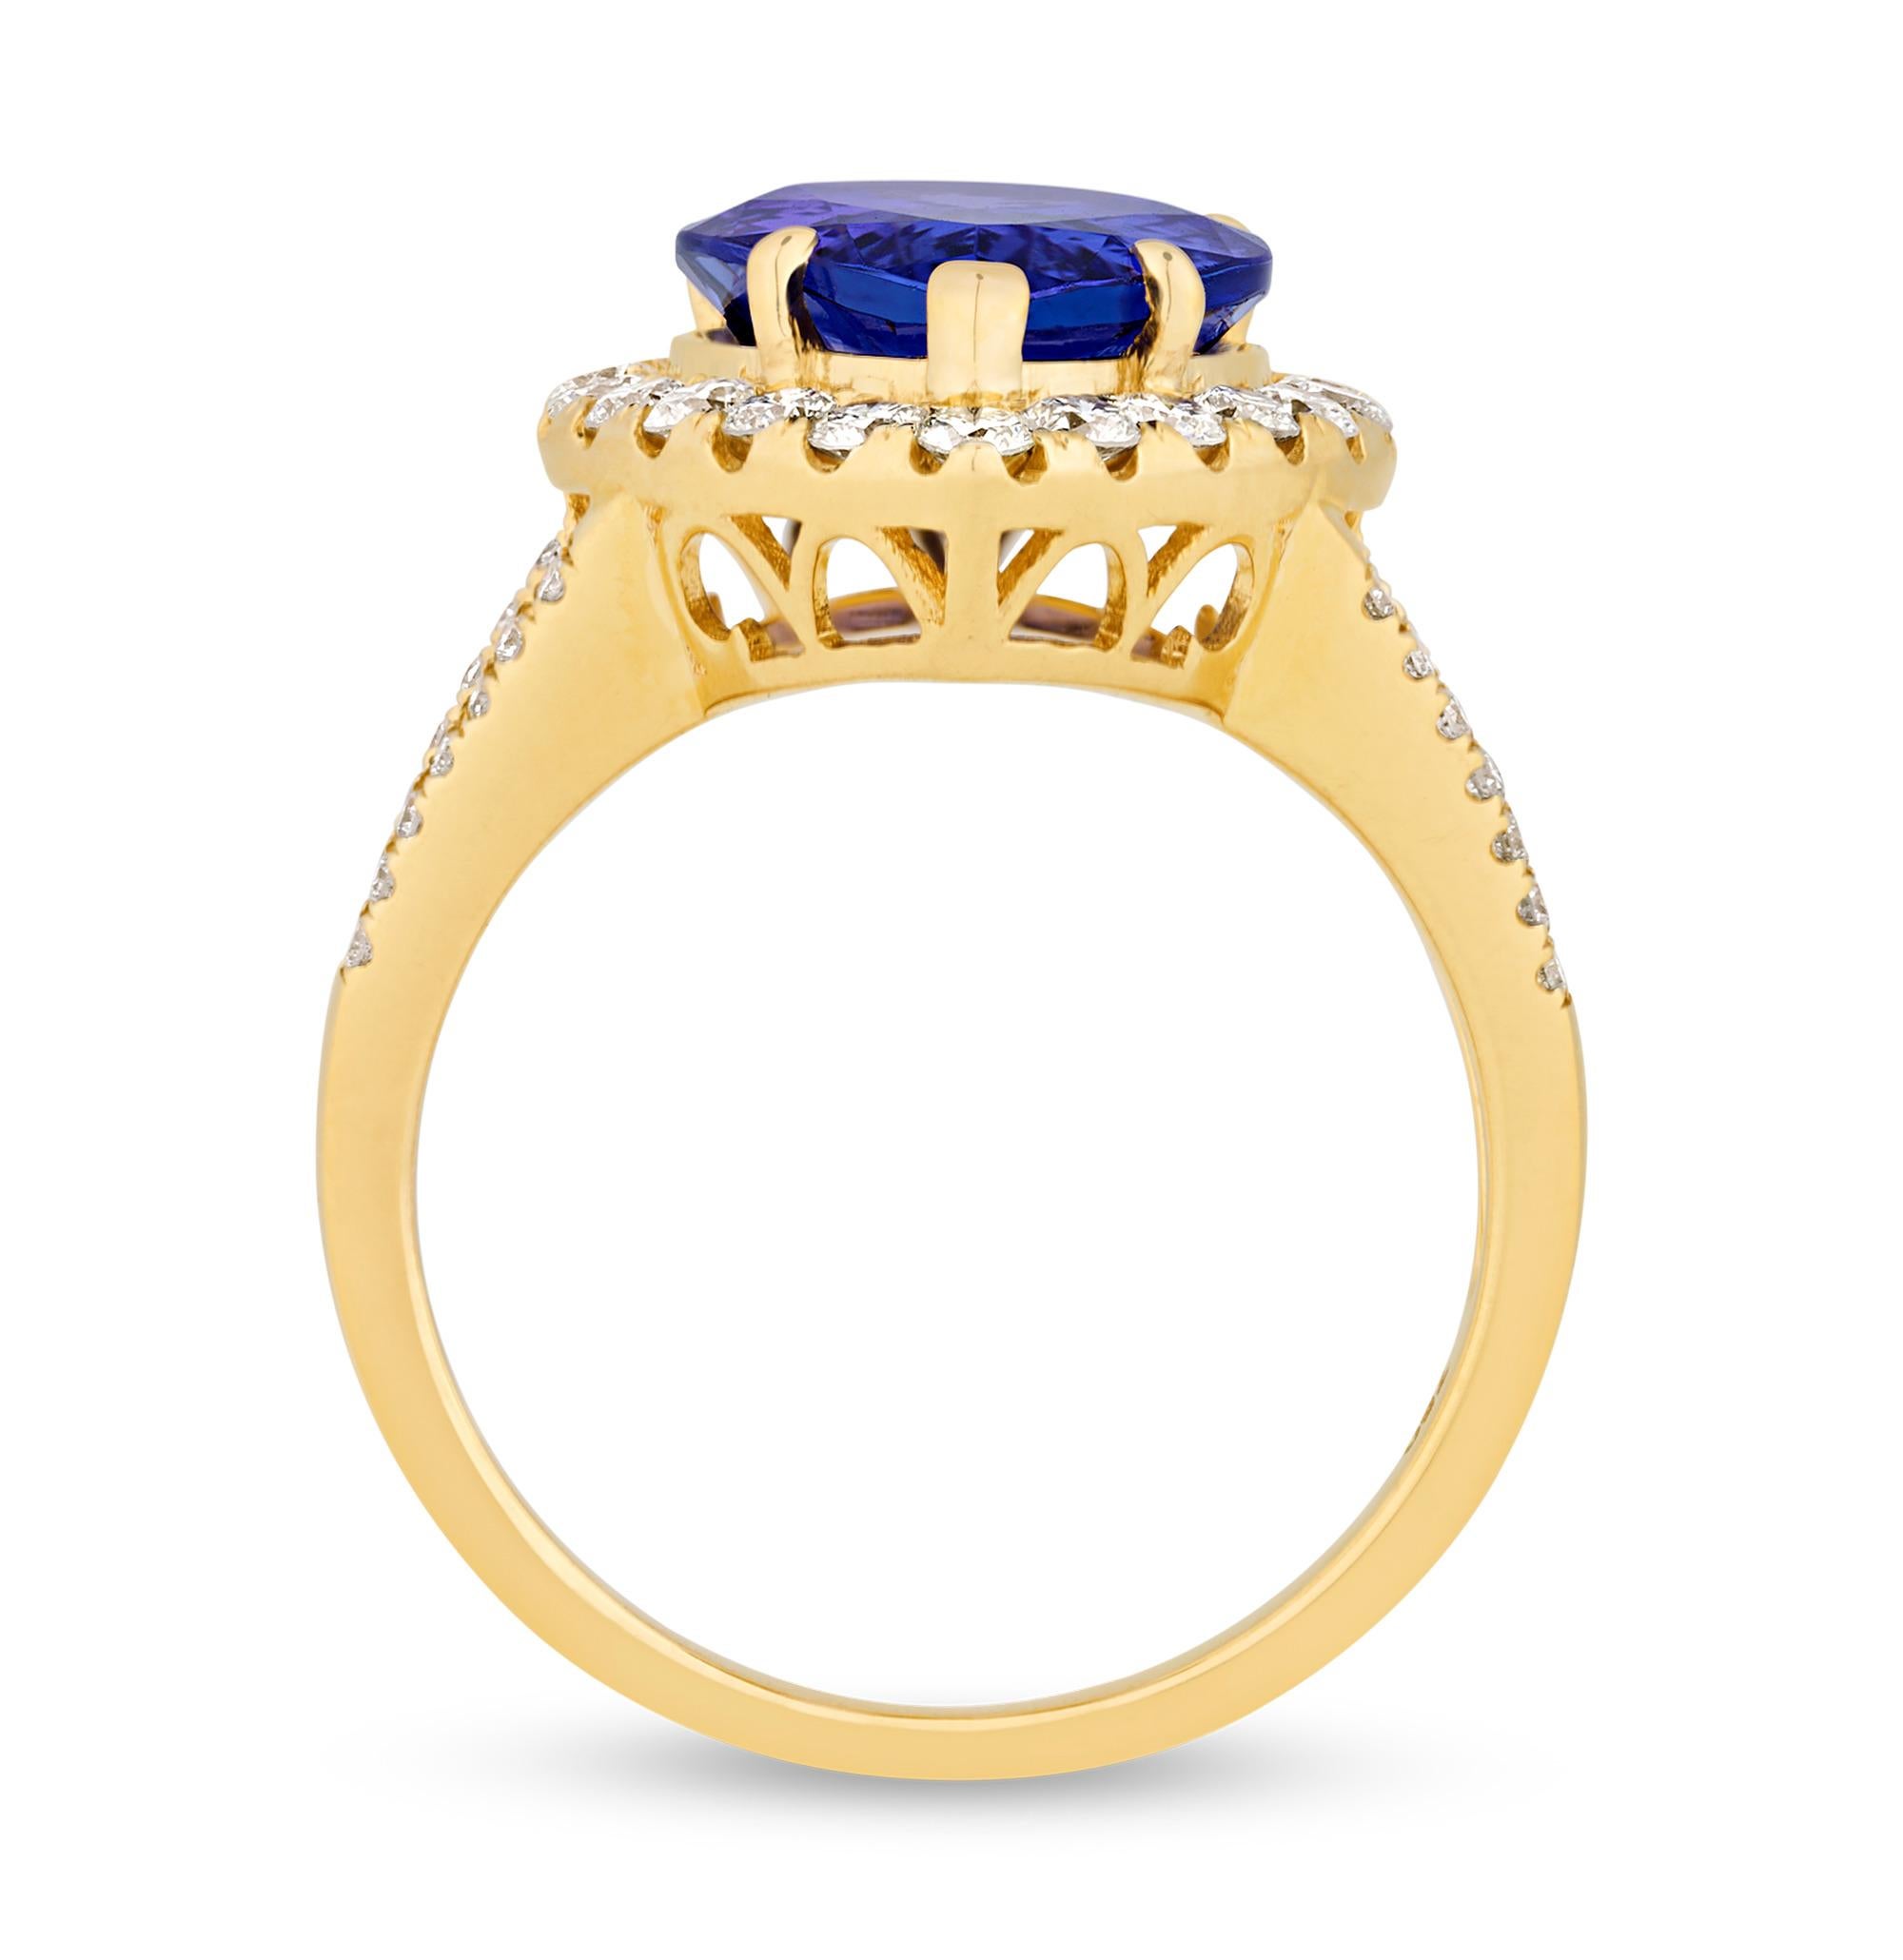 Ein birnenförmiger Tansanit von 5,53 Karat ist in diesem klassischen Ring gefasst. Der violettblaue Edelstein ist vom American International GemLab zertifiziert, und die Diamantakzente verleihen der Fassung aus 18 Karat Gelbgold zusätzlichen